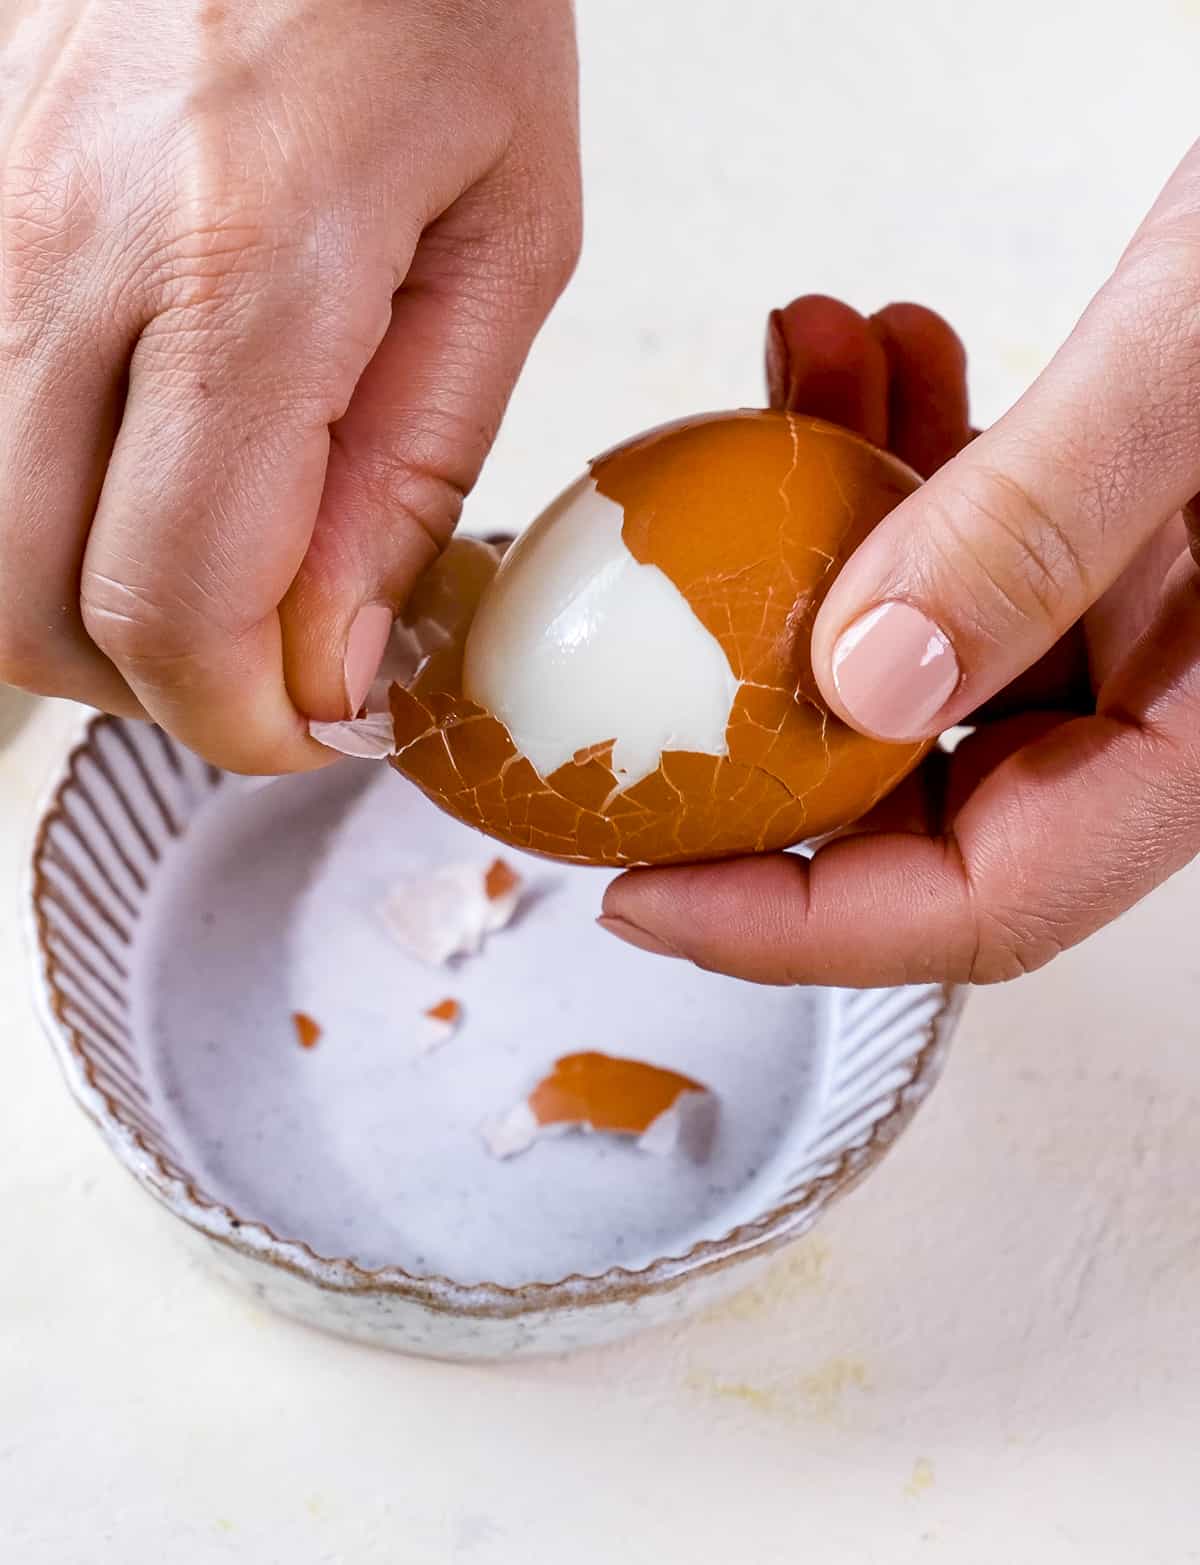 Hands peeling a hard boil egg.